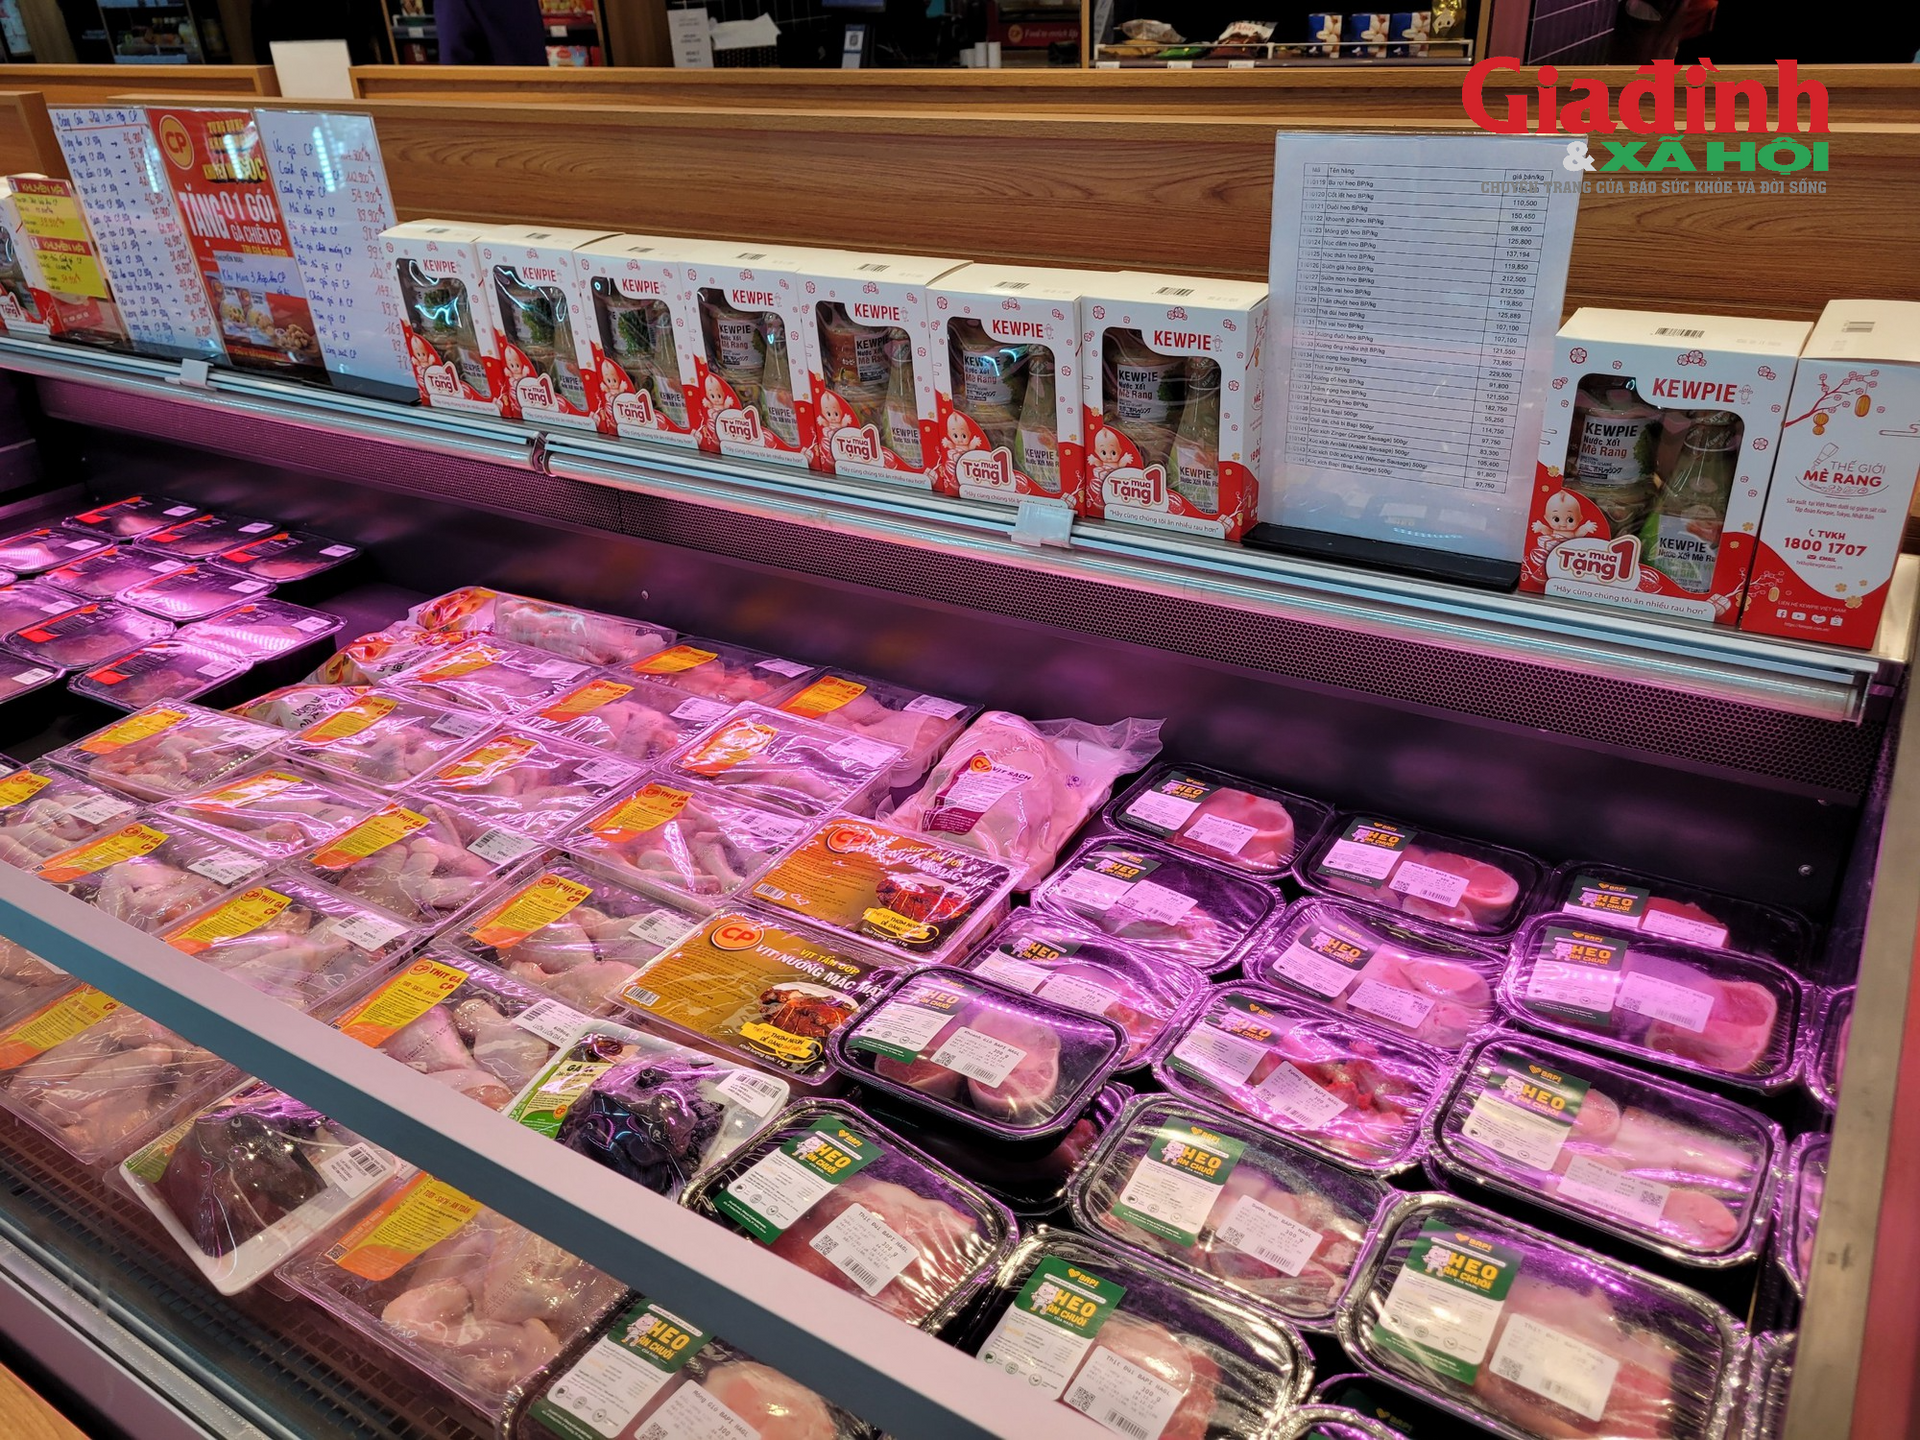 Nhu cầu thịt lợn tăng dịp cuối năm, nguồn cung thịt lợn phải được tăng cường như thế nào để đáp ứng thị trường? - Ảnh 2.